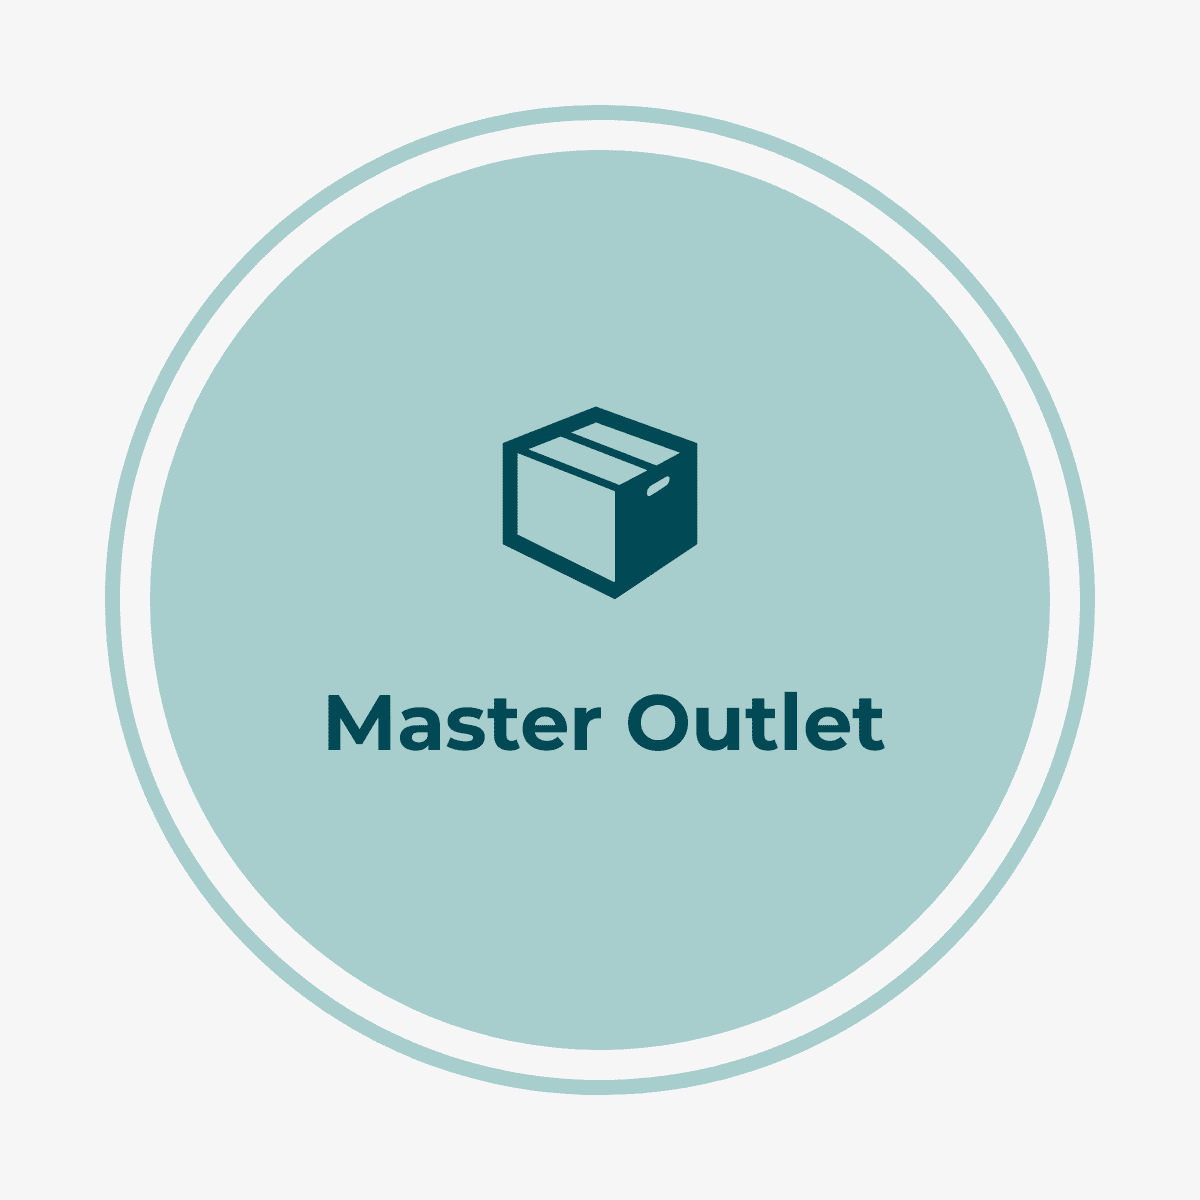 Master Outlet